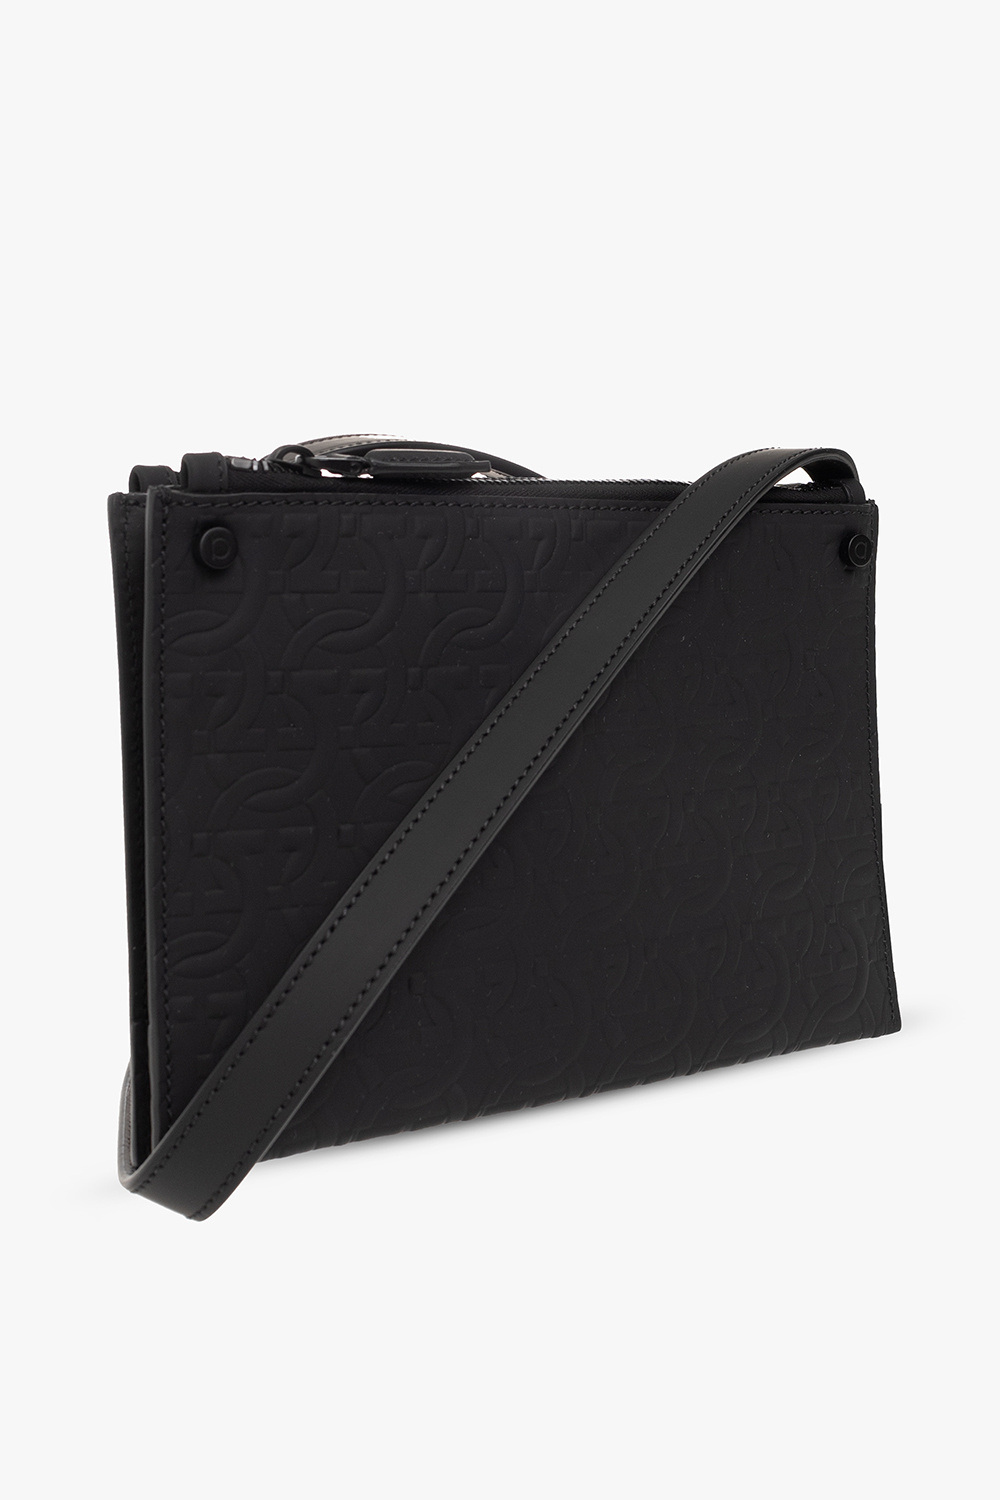 Salvatore Ferragamo Monogrammed leather shoulder bag